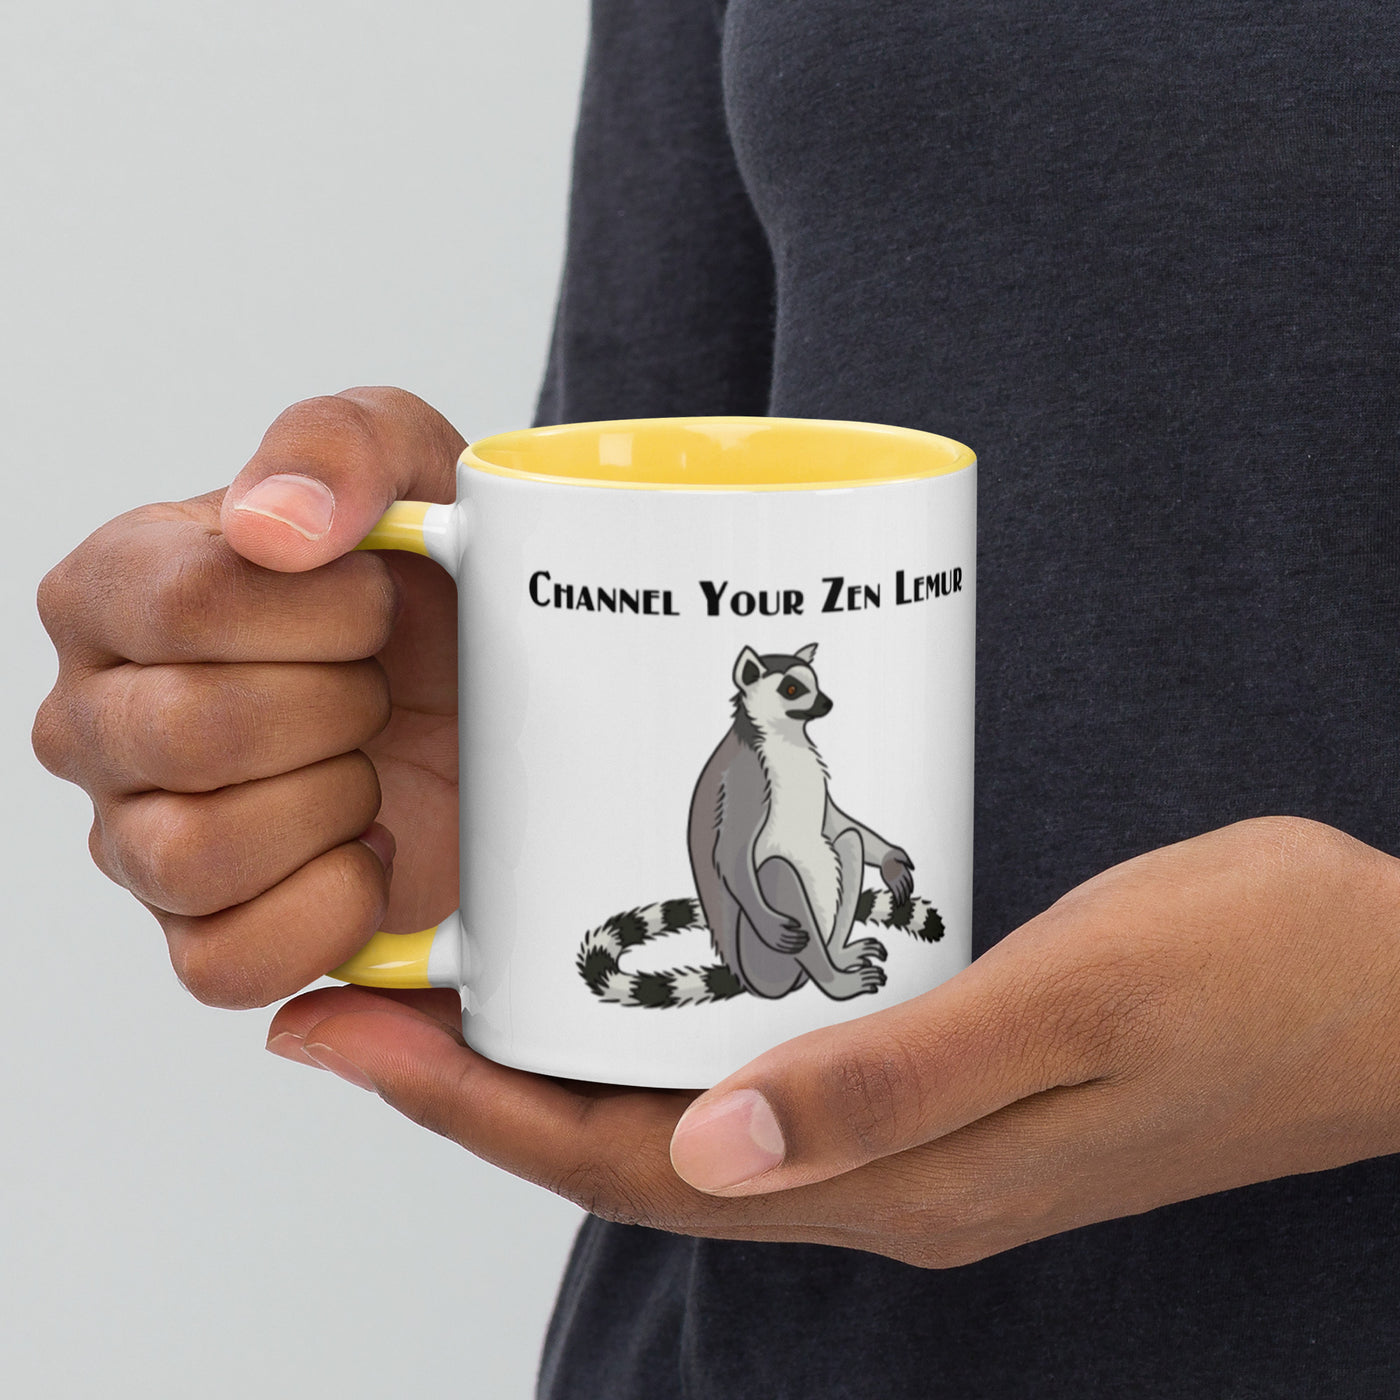 Channel Your Zen Lemur - Mug with Color Inside